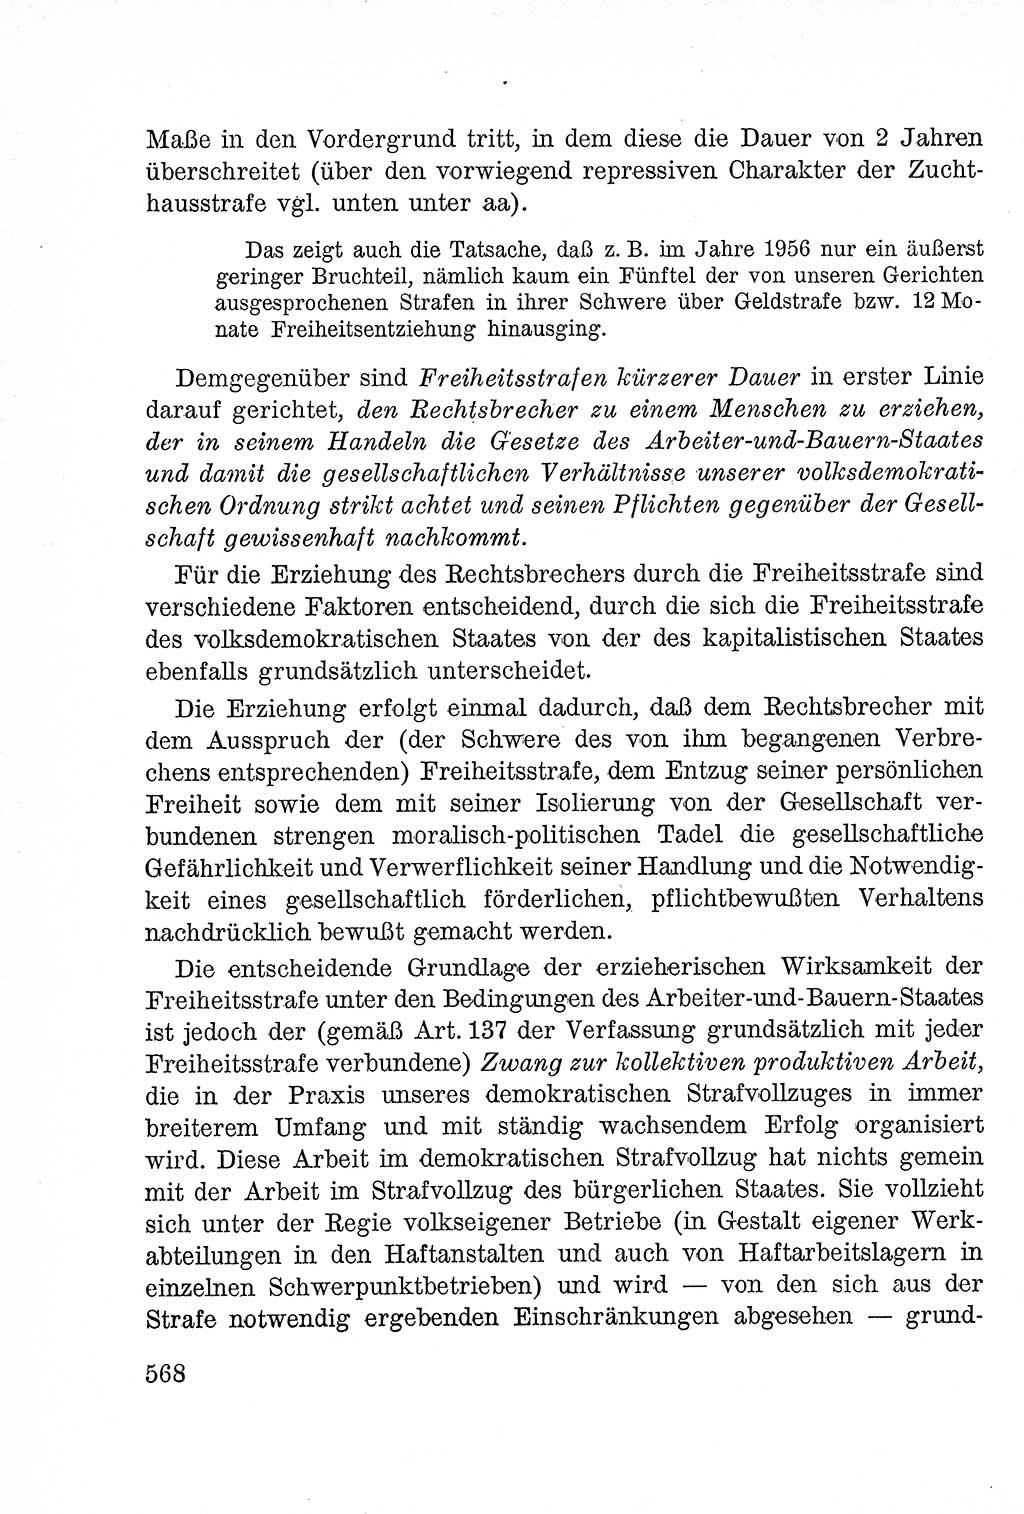 Lehrbuch des Strafrechts der Deutschen Demokratischen Republik (DDR), Allgemeiner Teil 1957, Seite 568 (Lb. Strafr. DDR AT 1957, S. 568)